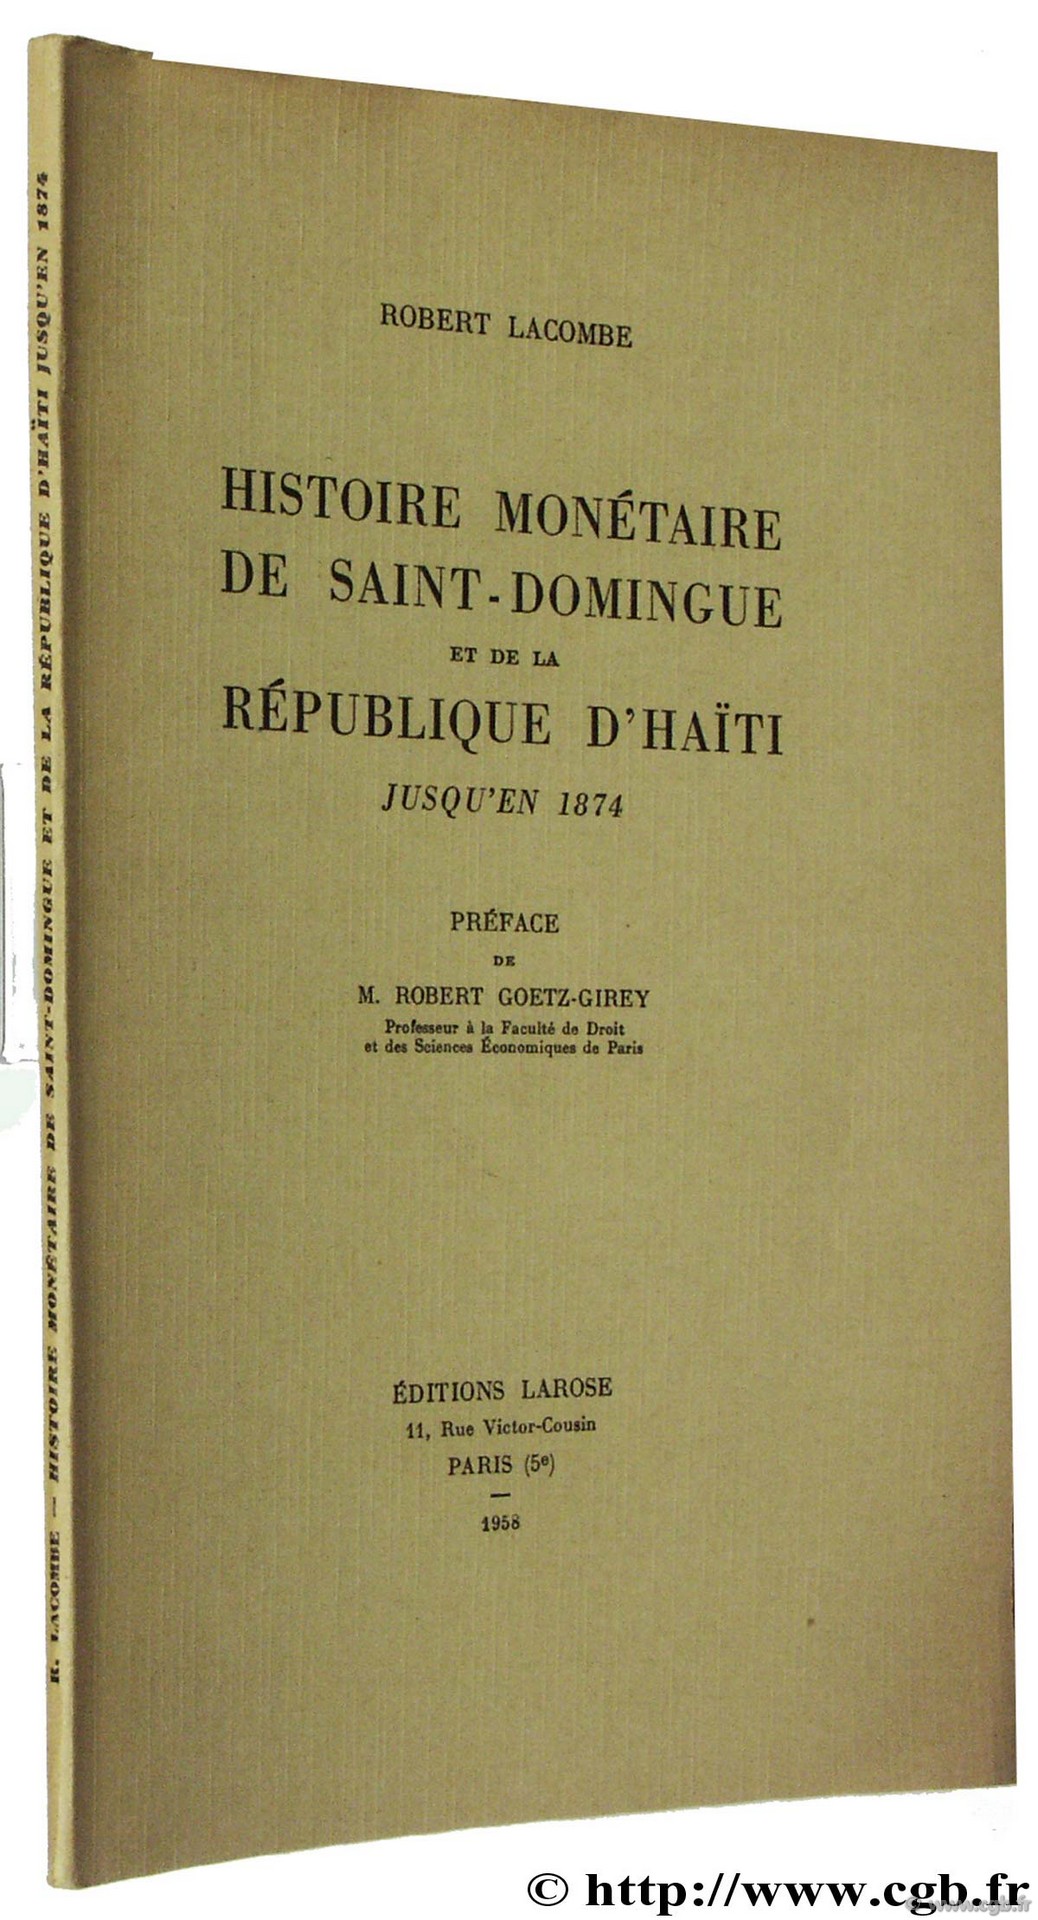 Histoire monétaire de Saint-Domingue et de la République d Haïti jusqu en 1874 LACOMBE R.